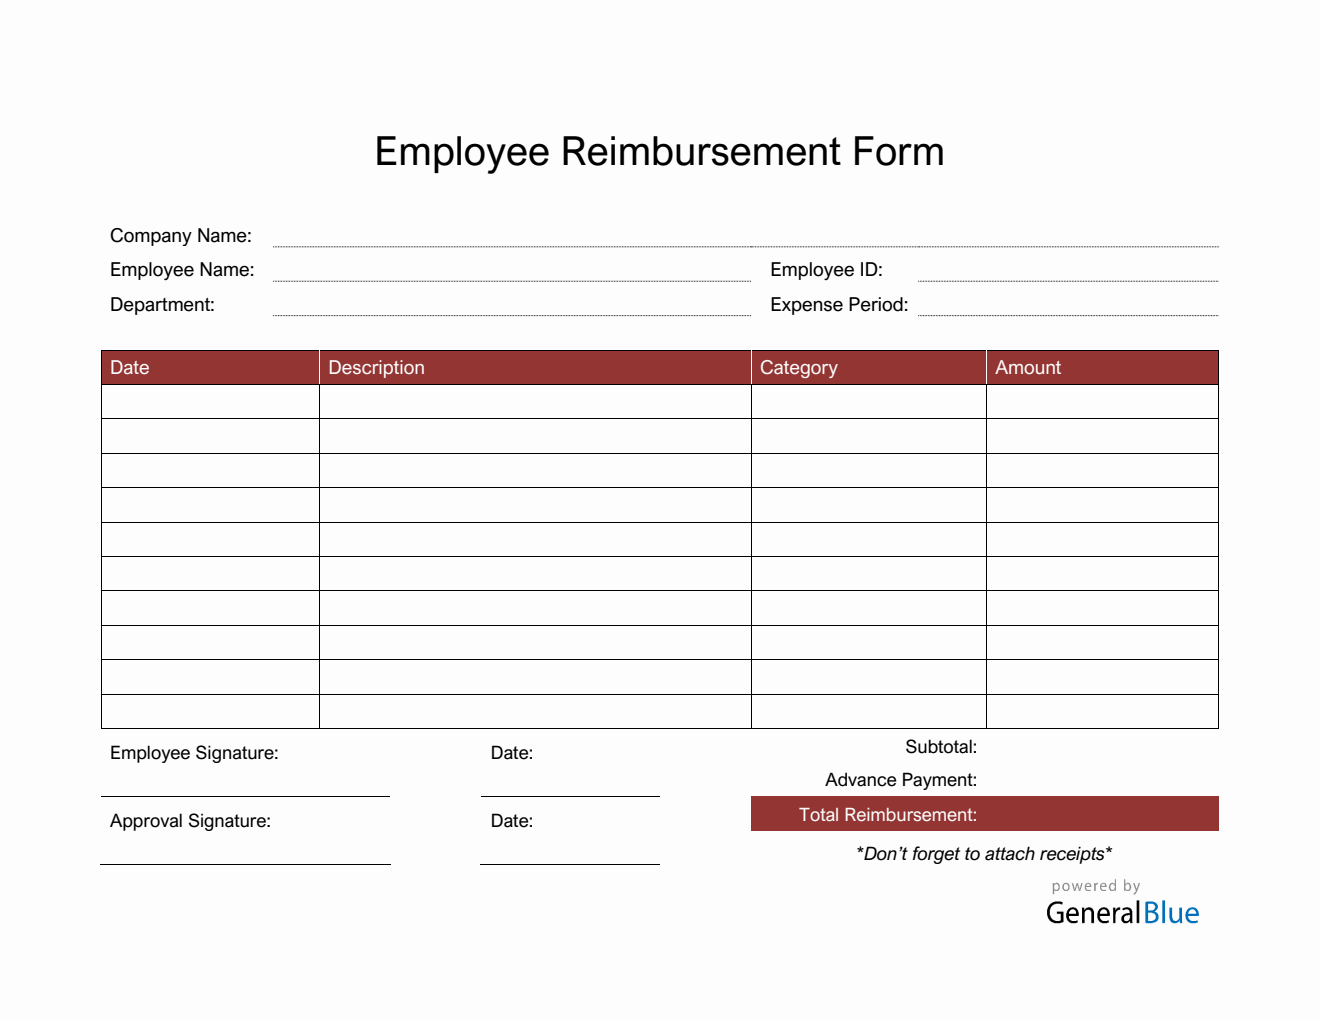 Employee Reimbursement Form in Word (Red)